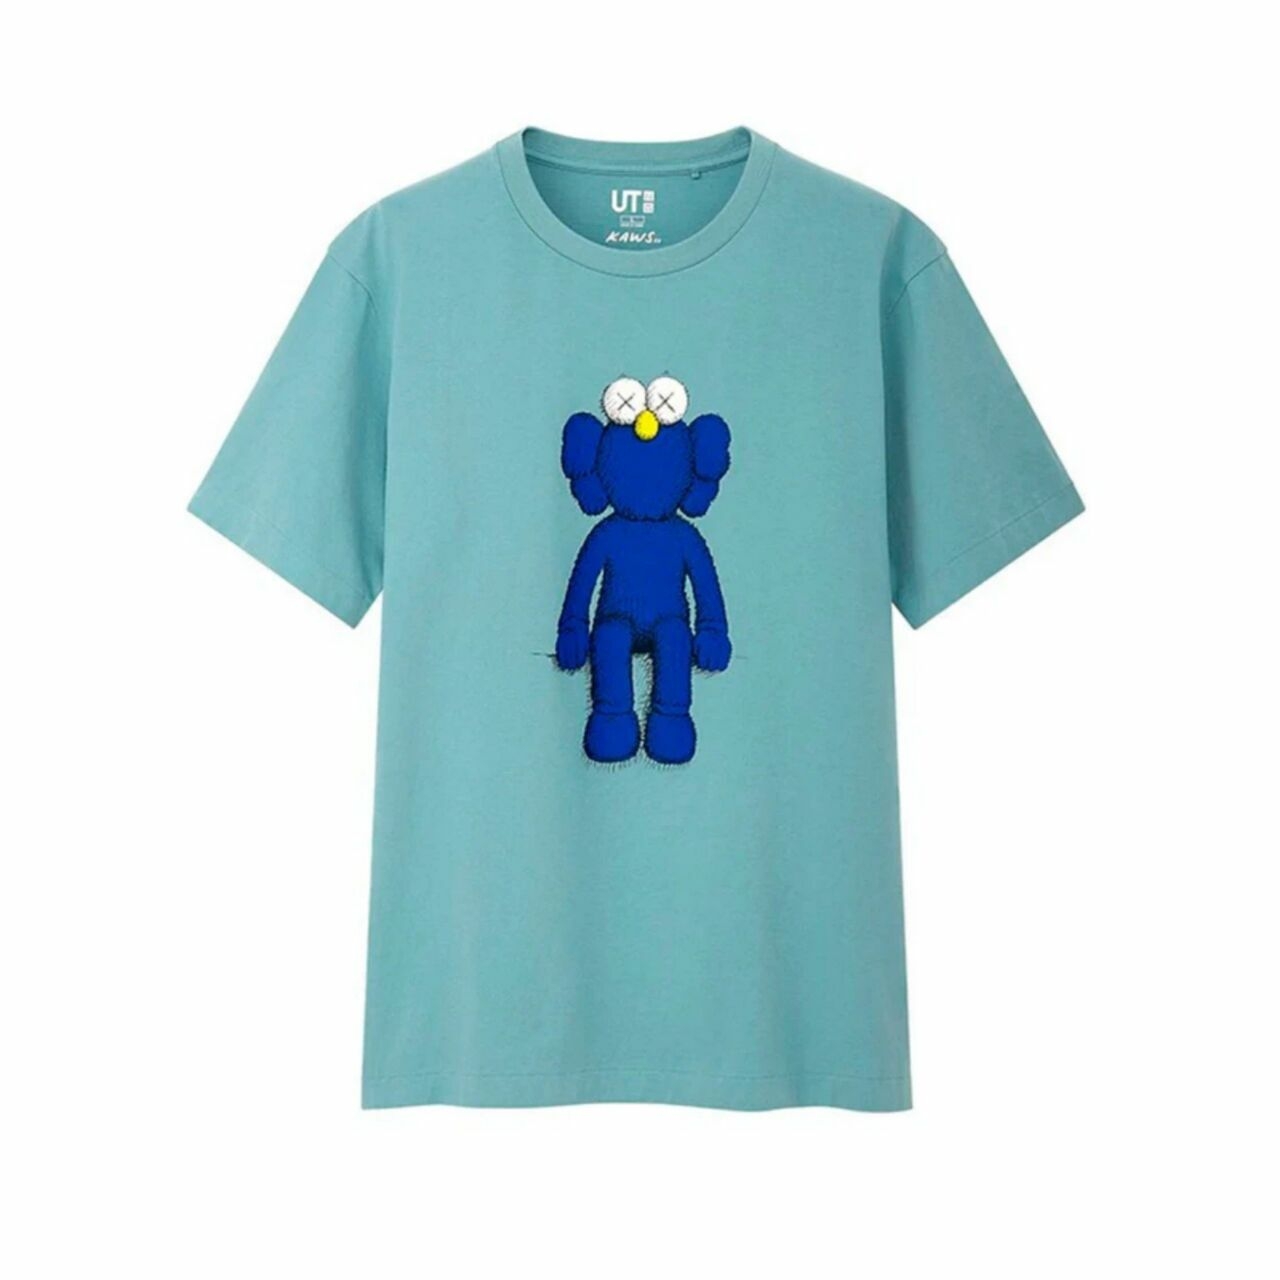 UNIQLO X Kaws Blue BFF T-Shirt